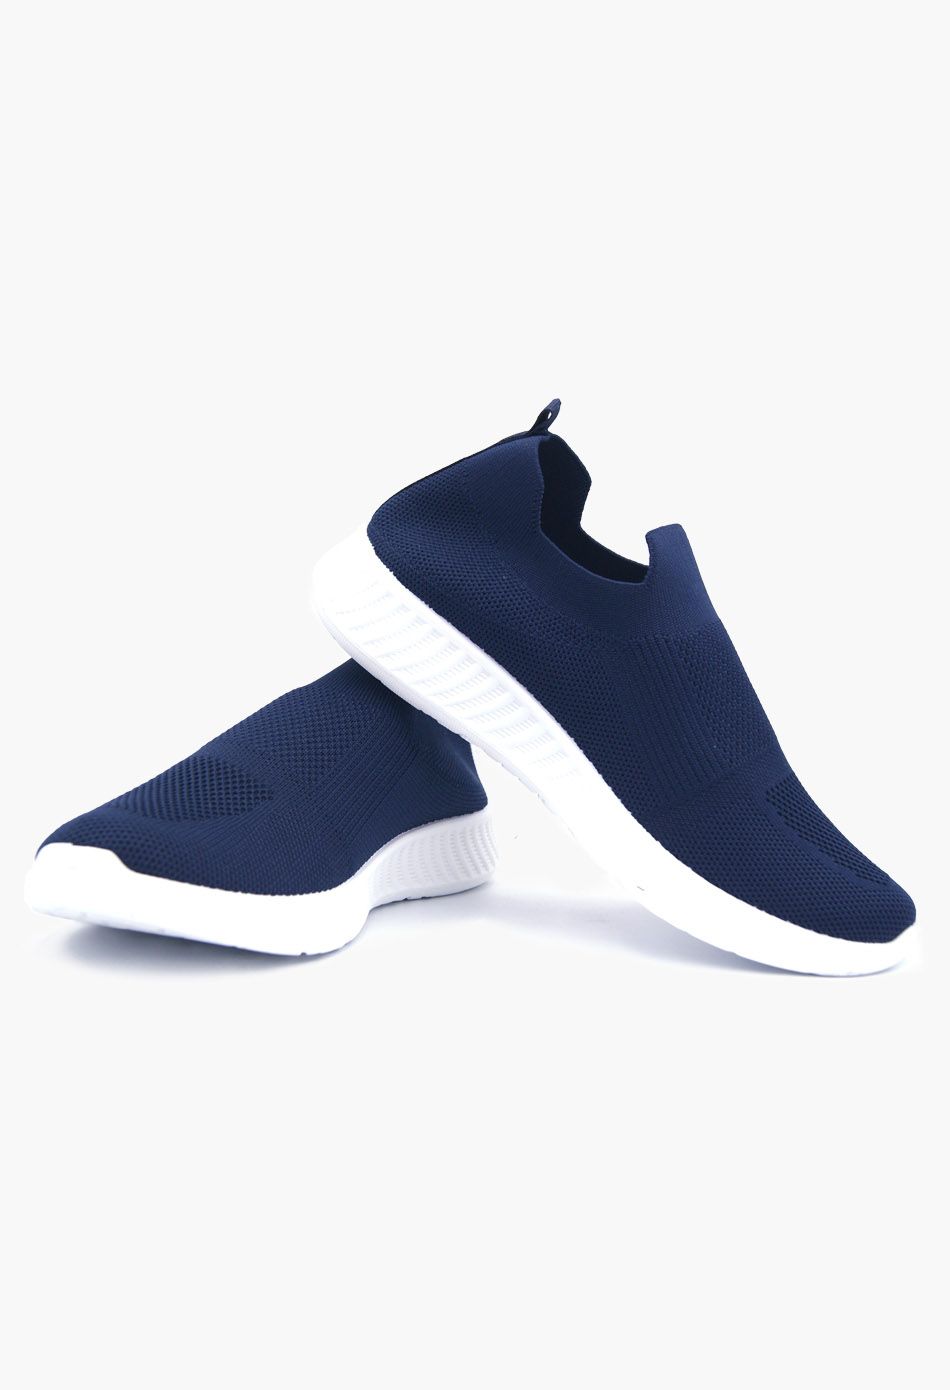 Ανδρικά Αθλητικά Παπούτσια για Τρέξιμο τύπου κάλτσα Μπλε / V20-blue ΑΘΛΗΤΙΚΑ & SNEAKERS joya.gr